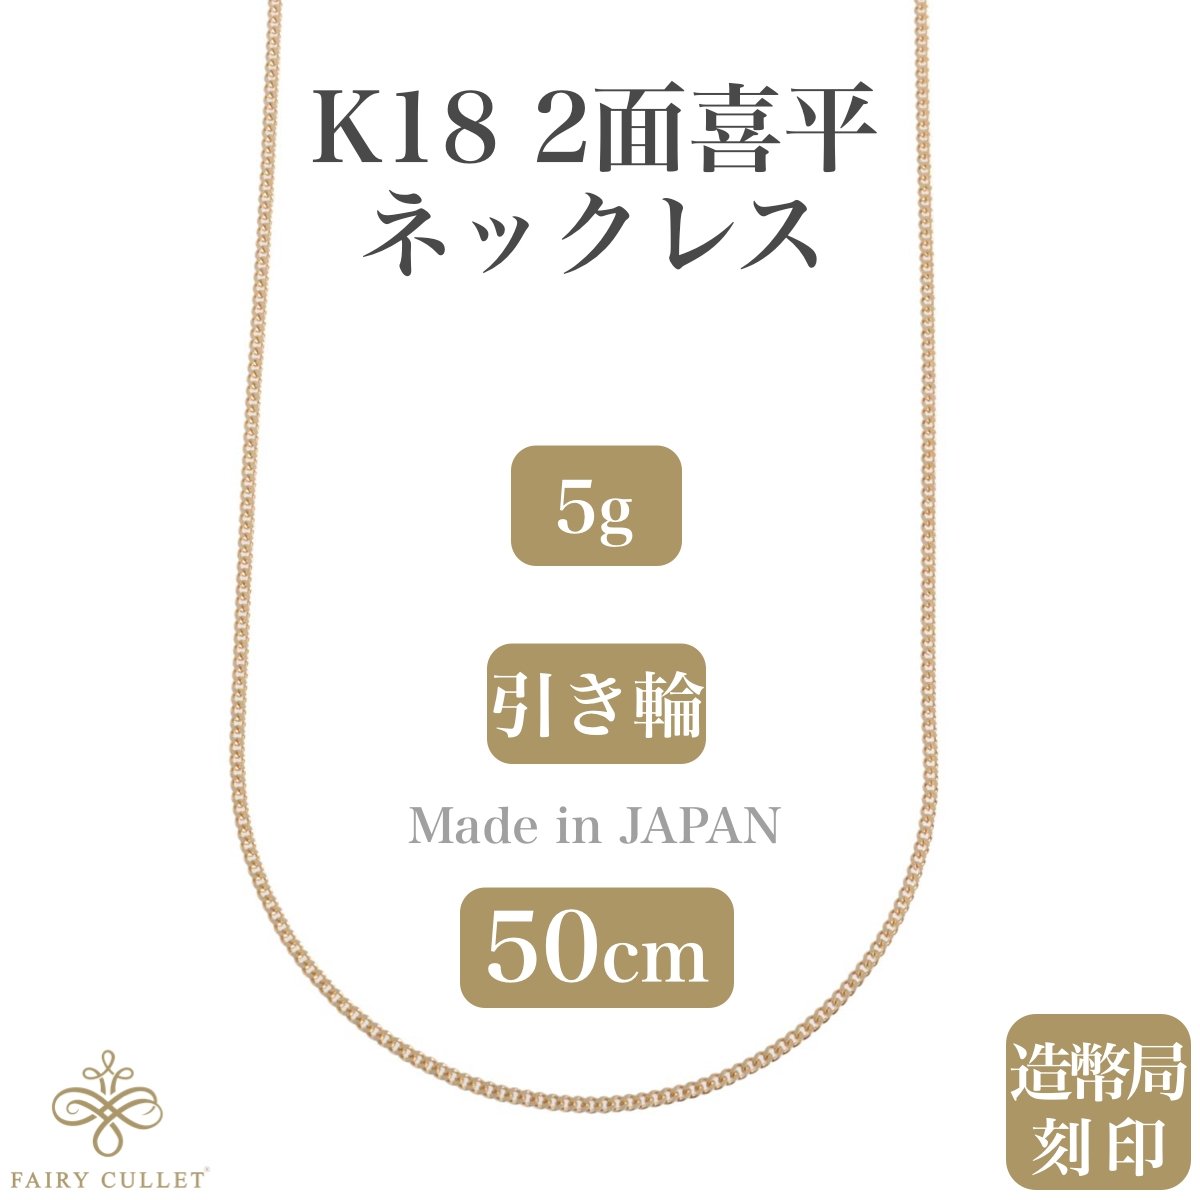 18金ネックレス K18 2面喜平チェーン 日本製 検定印 5g 50cm 引き輪